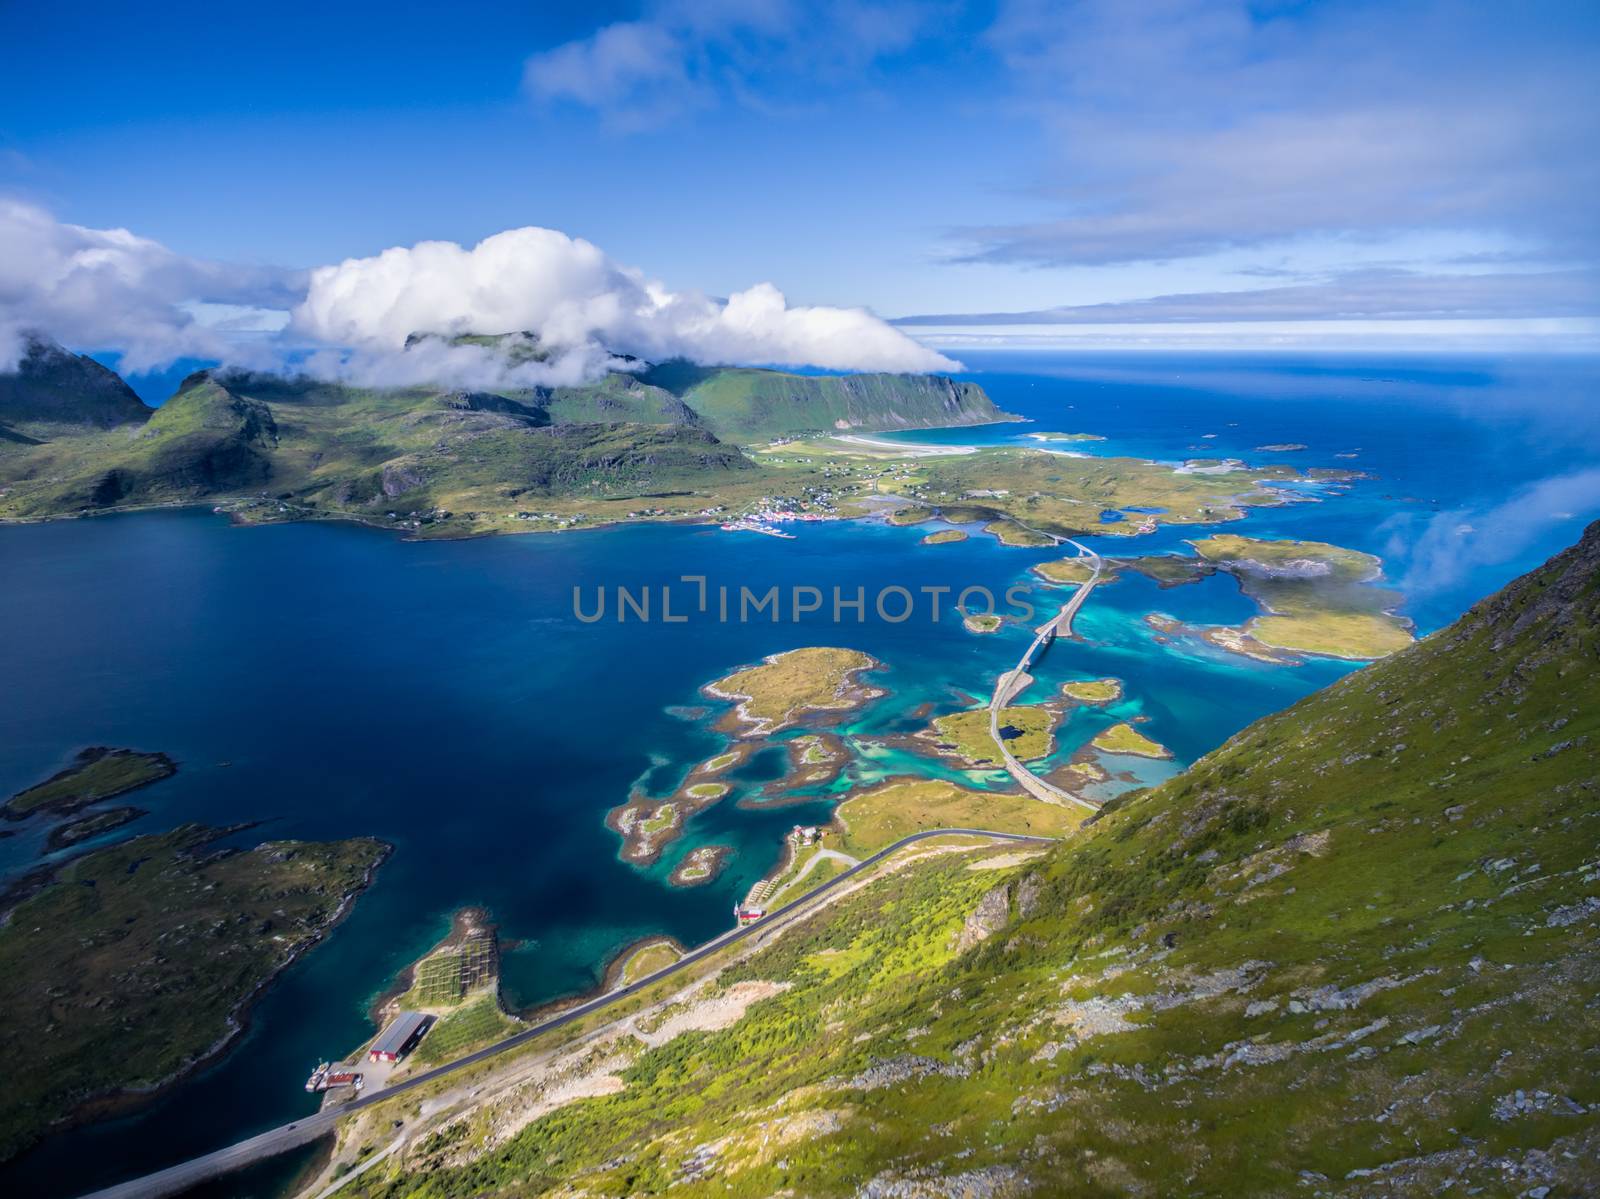 Lofoten islands by Harvepino